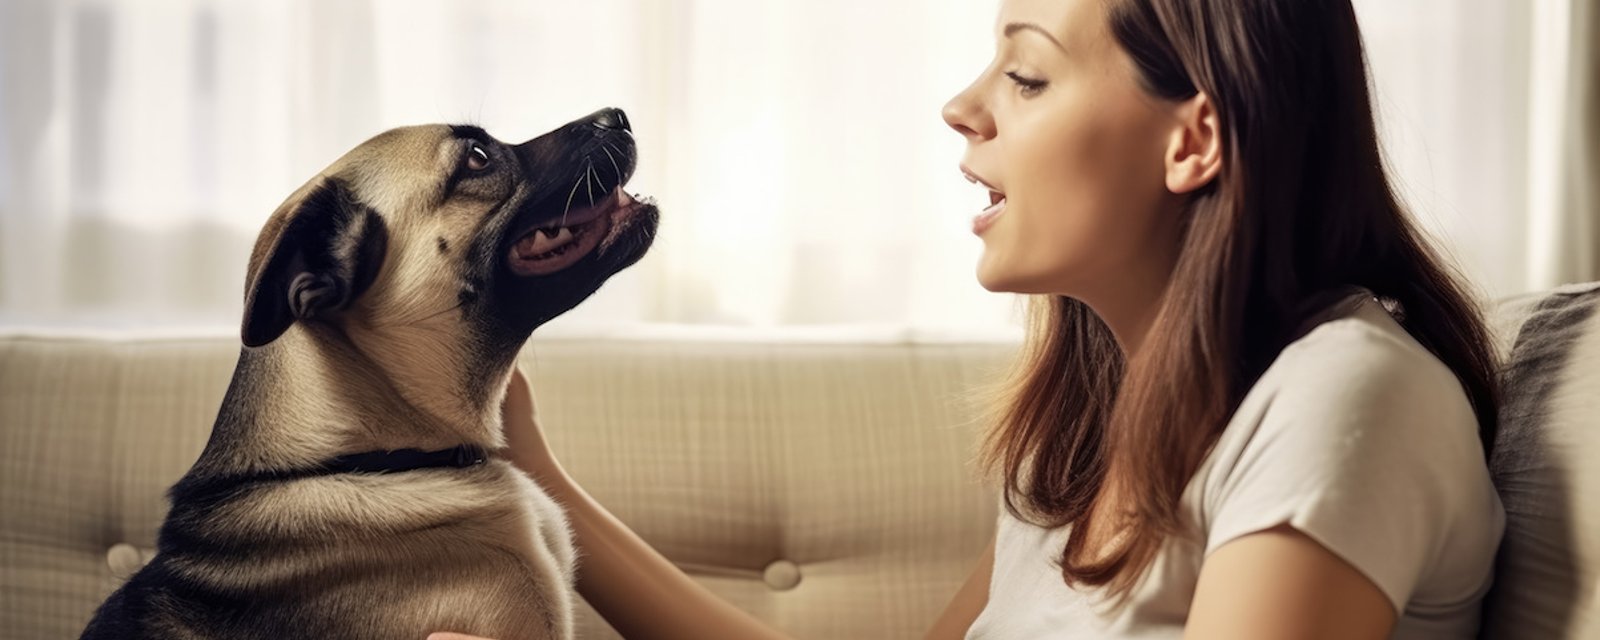 La science a démontré que les chiens préfèrent les voix féminines